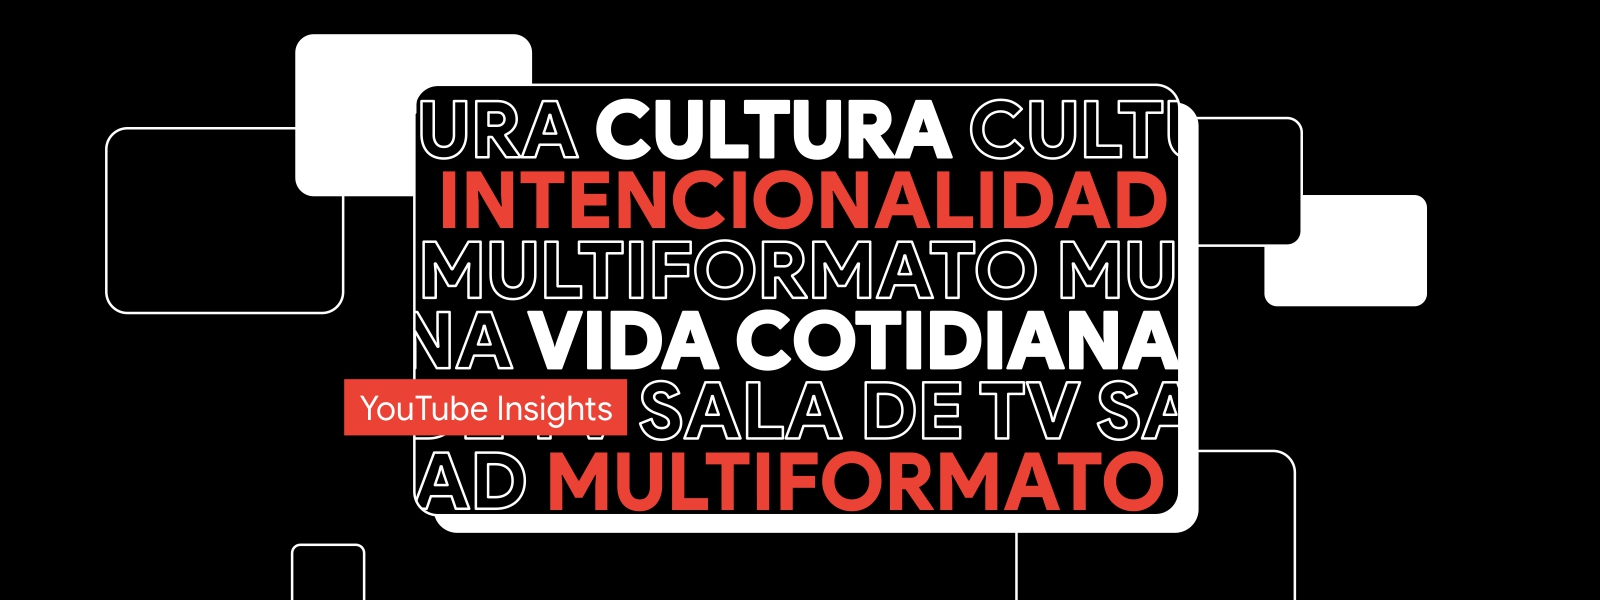 Una pantalla con fondo negro y letras en blanco y rojo que dicen “Cultura” “Intencionalidad”, “Multiformato”, “Vida cotidiana”, “Sala de TV”. Un cintillo con fondo rojo y letras blancas que dice “YouTube Insights”.